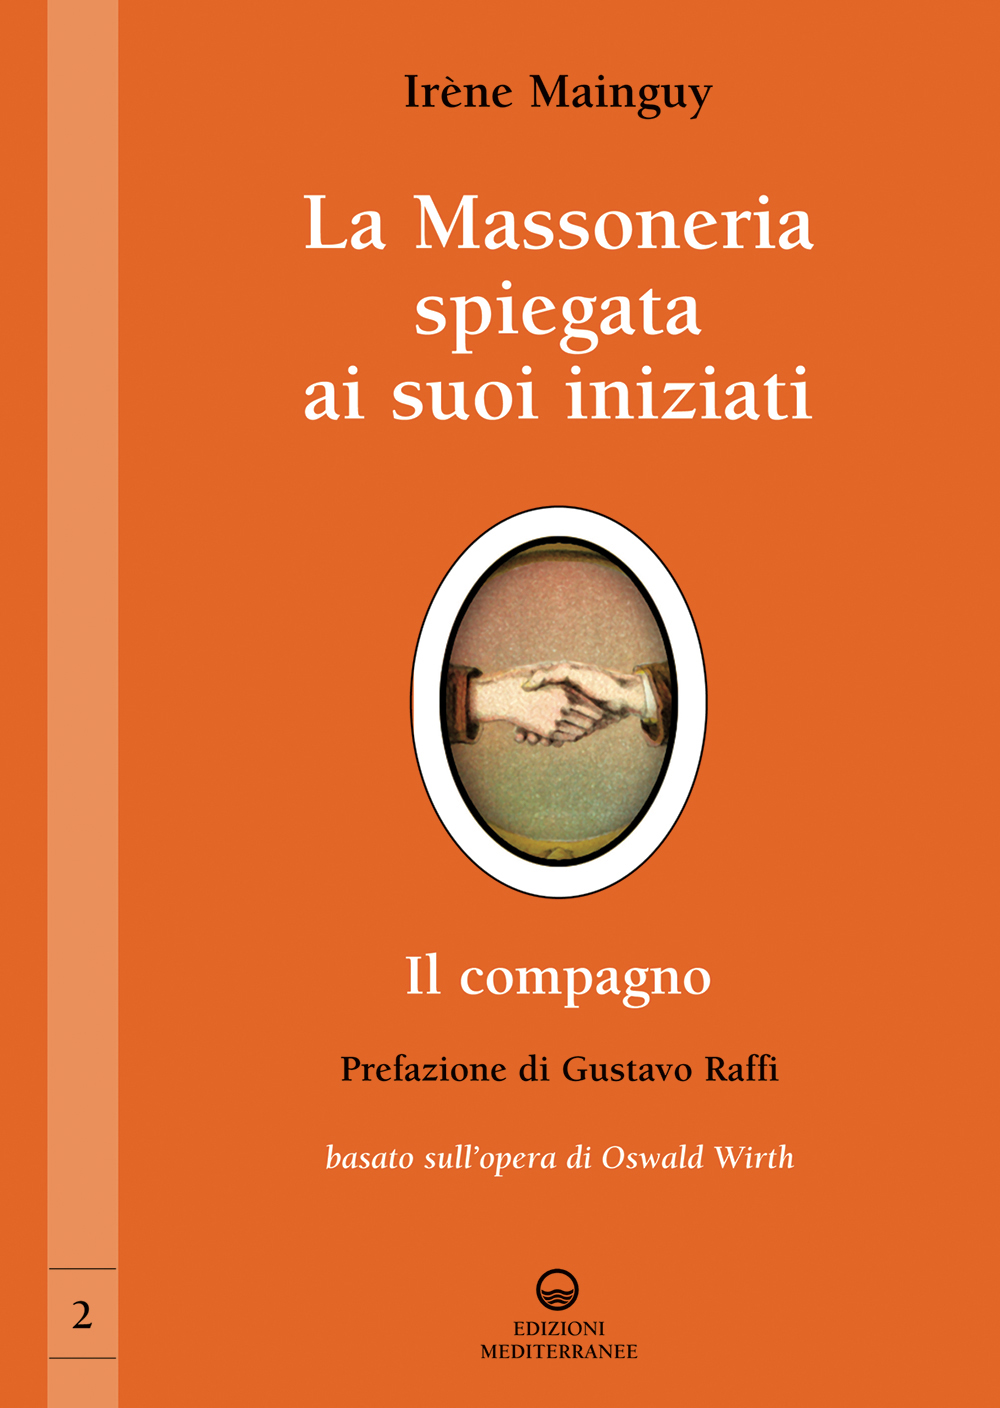 Libri IrEne Mainguy - La Massoneria Spiegata Ai Suoi Iniziati NUOVO SIGILLATO, EDIZIONE DEL 03/04/2013 SUBITO DISPONIBILE